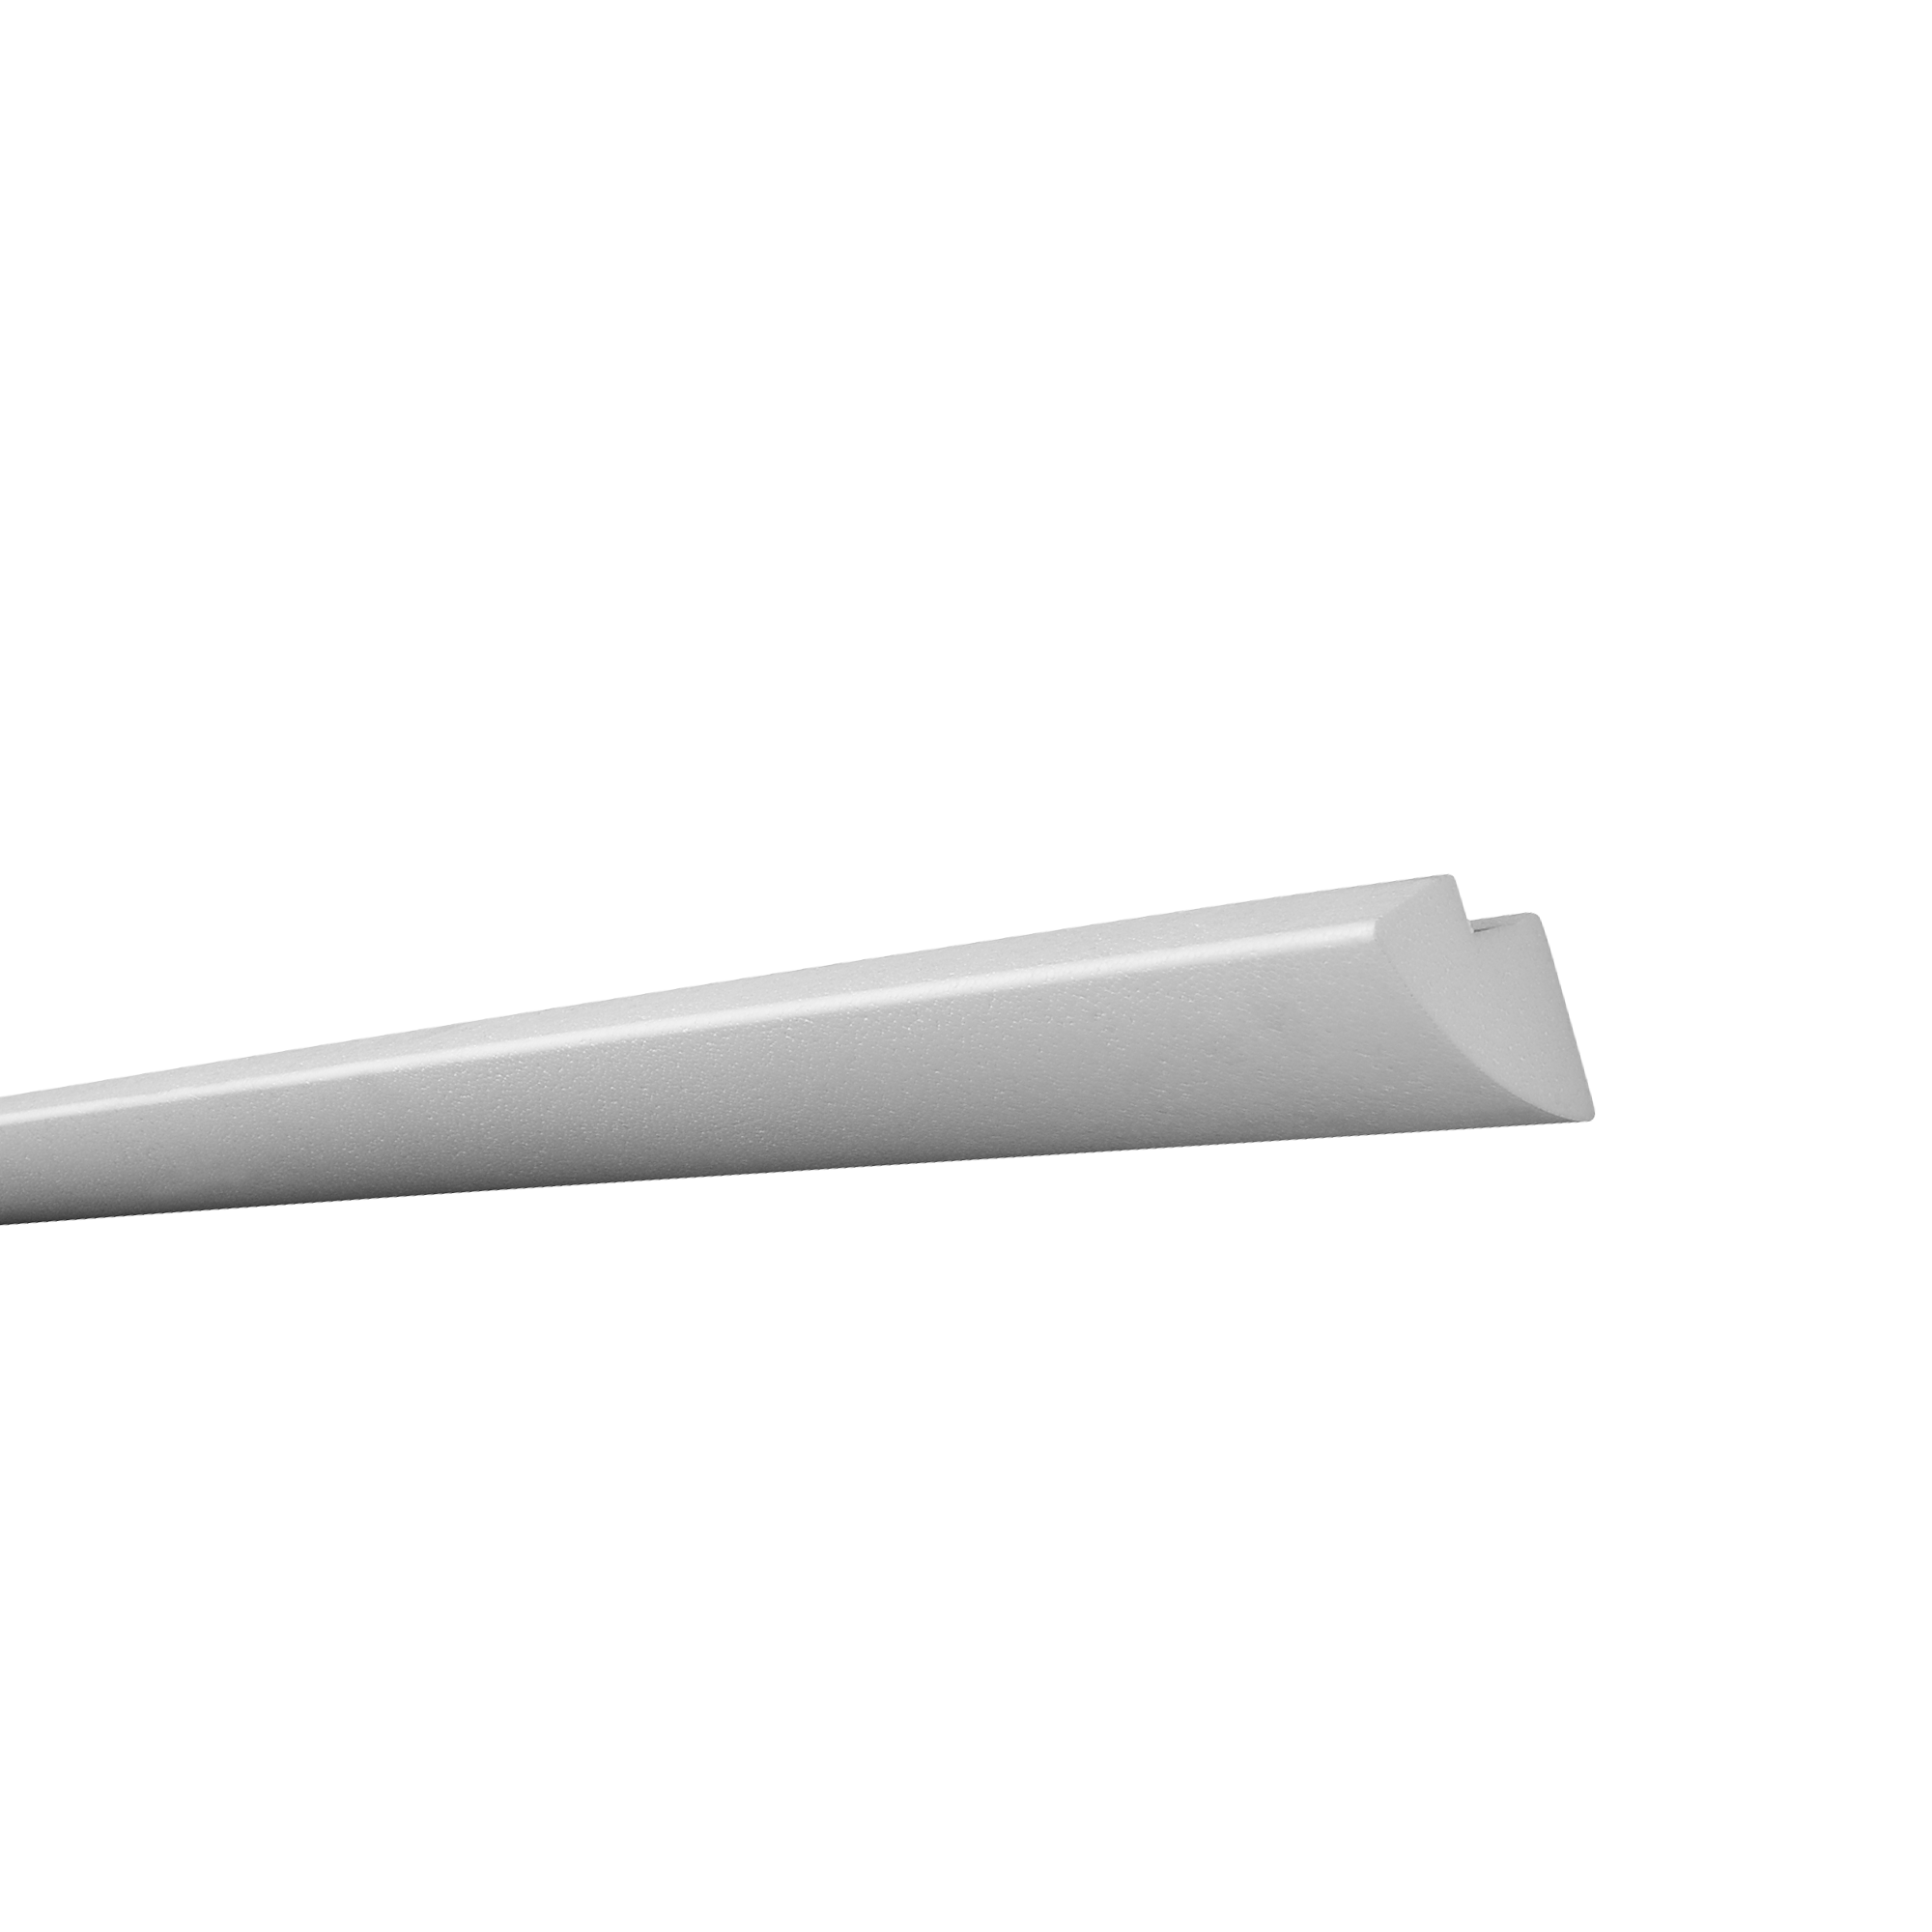 Zierprofil für LED-Stripes 'Karoline' EPS weiß 200 x 6,5 cm + product picture